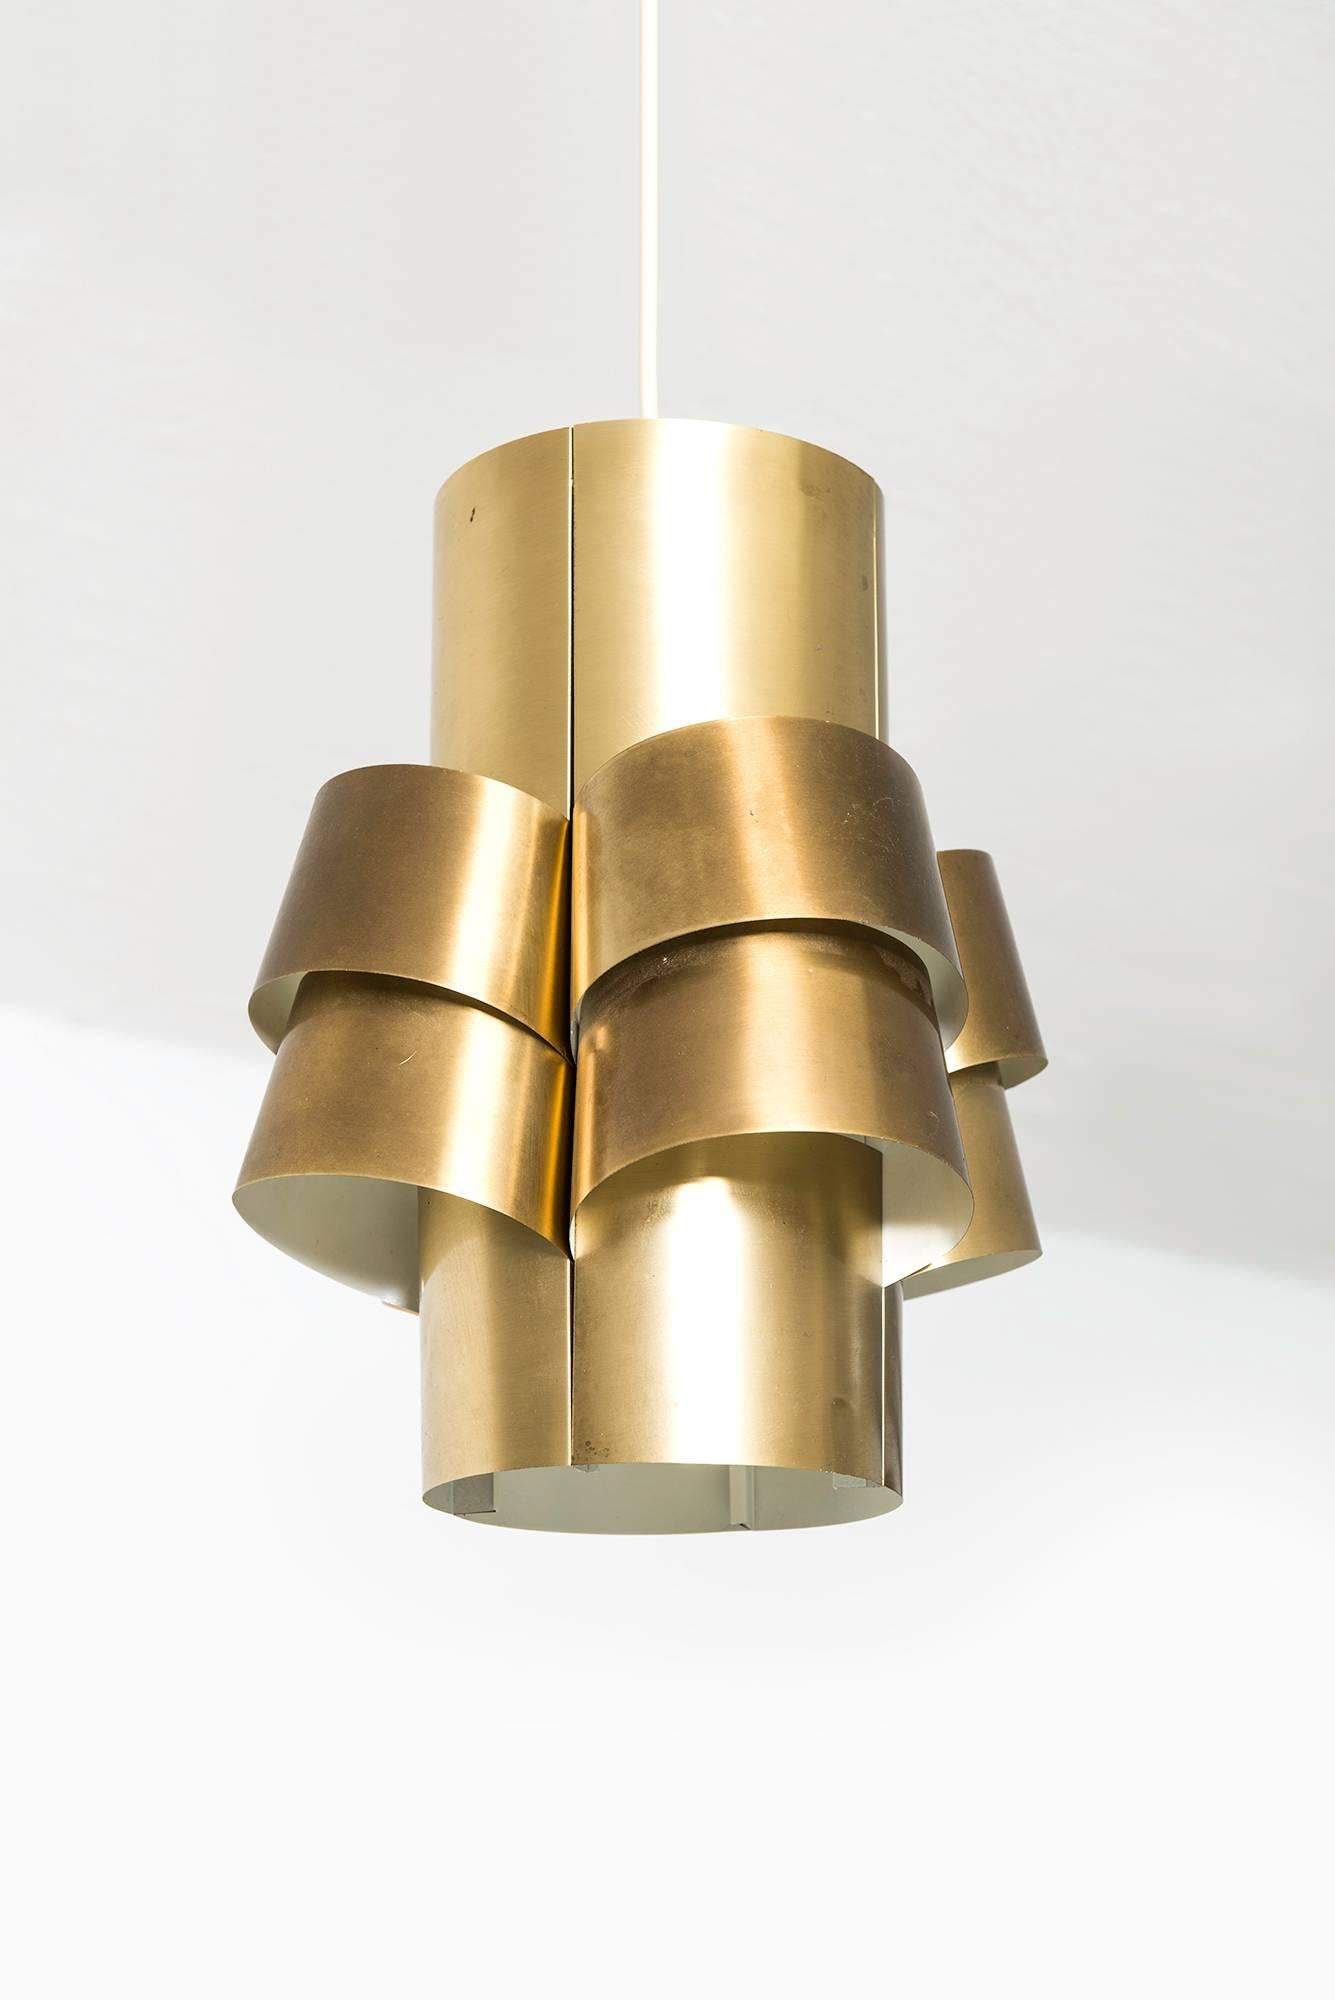 Ceiling lamp designed by Torsten Orrling & Hans-Agne Jakobsson. Produced by Hans-Agne Jakobsson AB in Markaryd, Sweden.